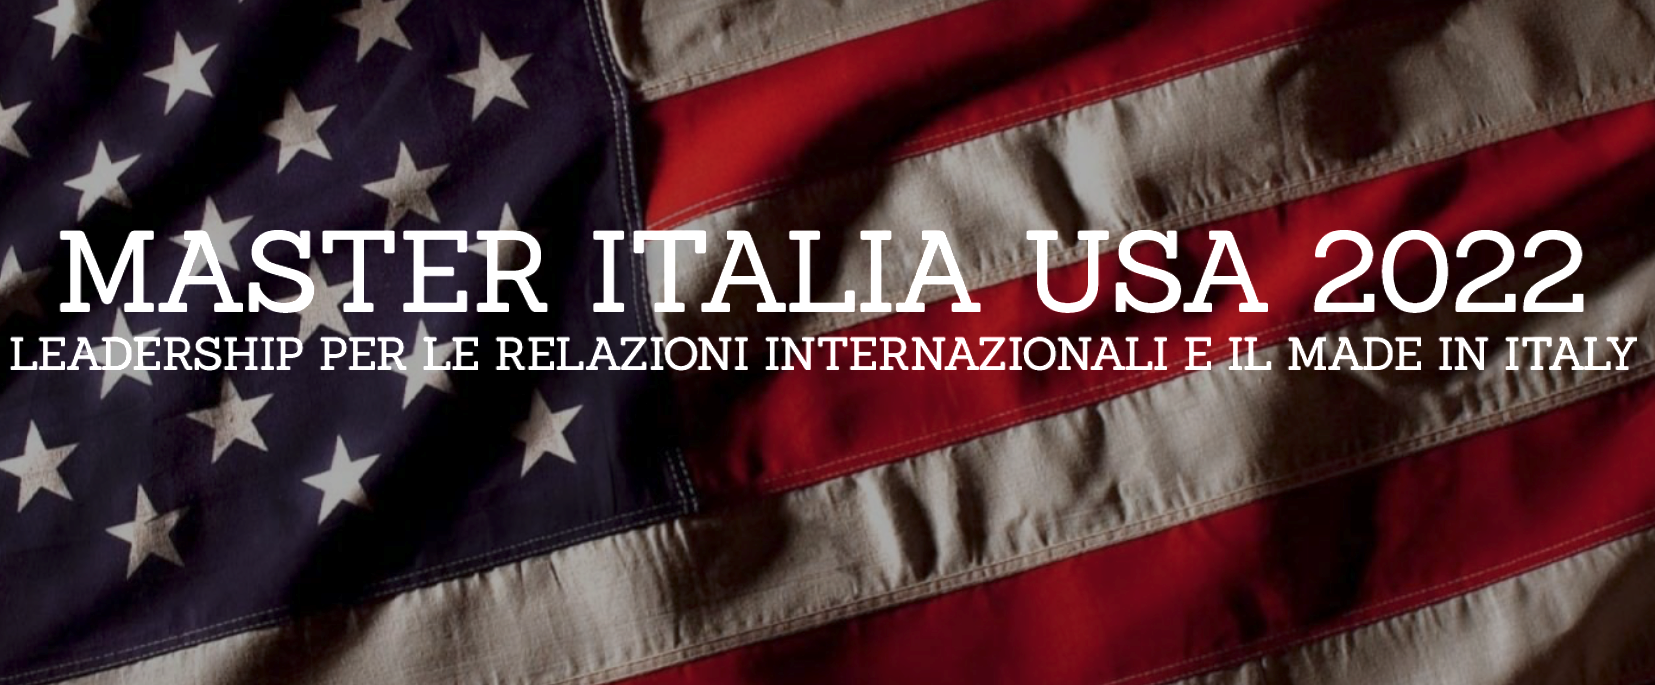 Bandite 200 borse di studio per il nuovo master della Fondazione Italia USA